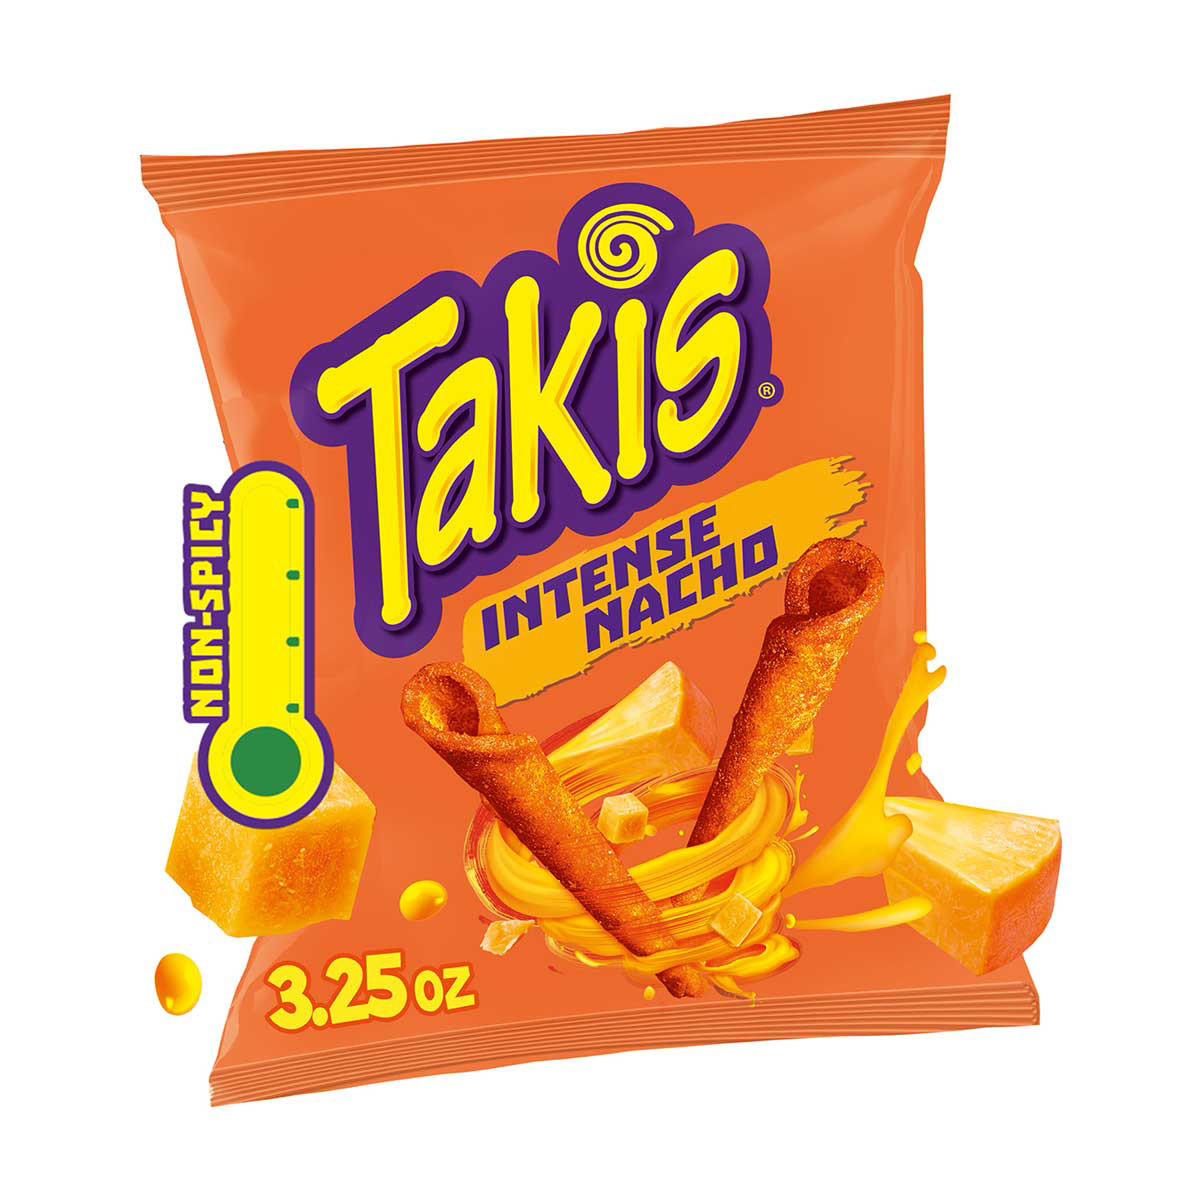 Takis Non-Spicy Intense Nacho, 3.25 oz